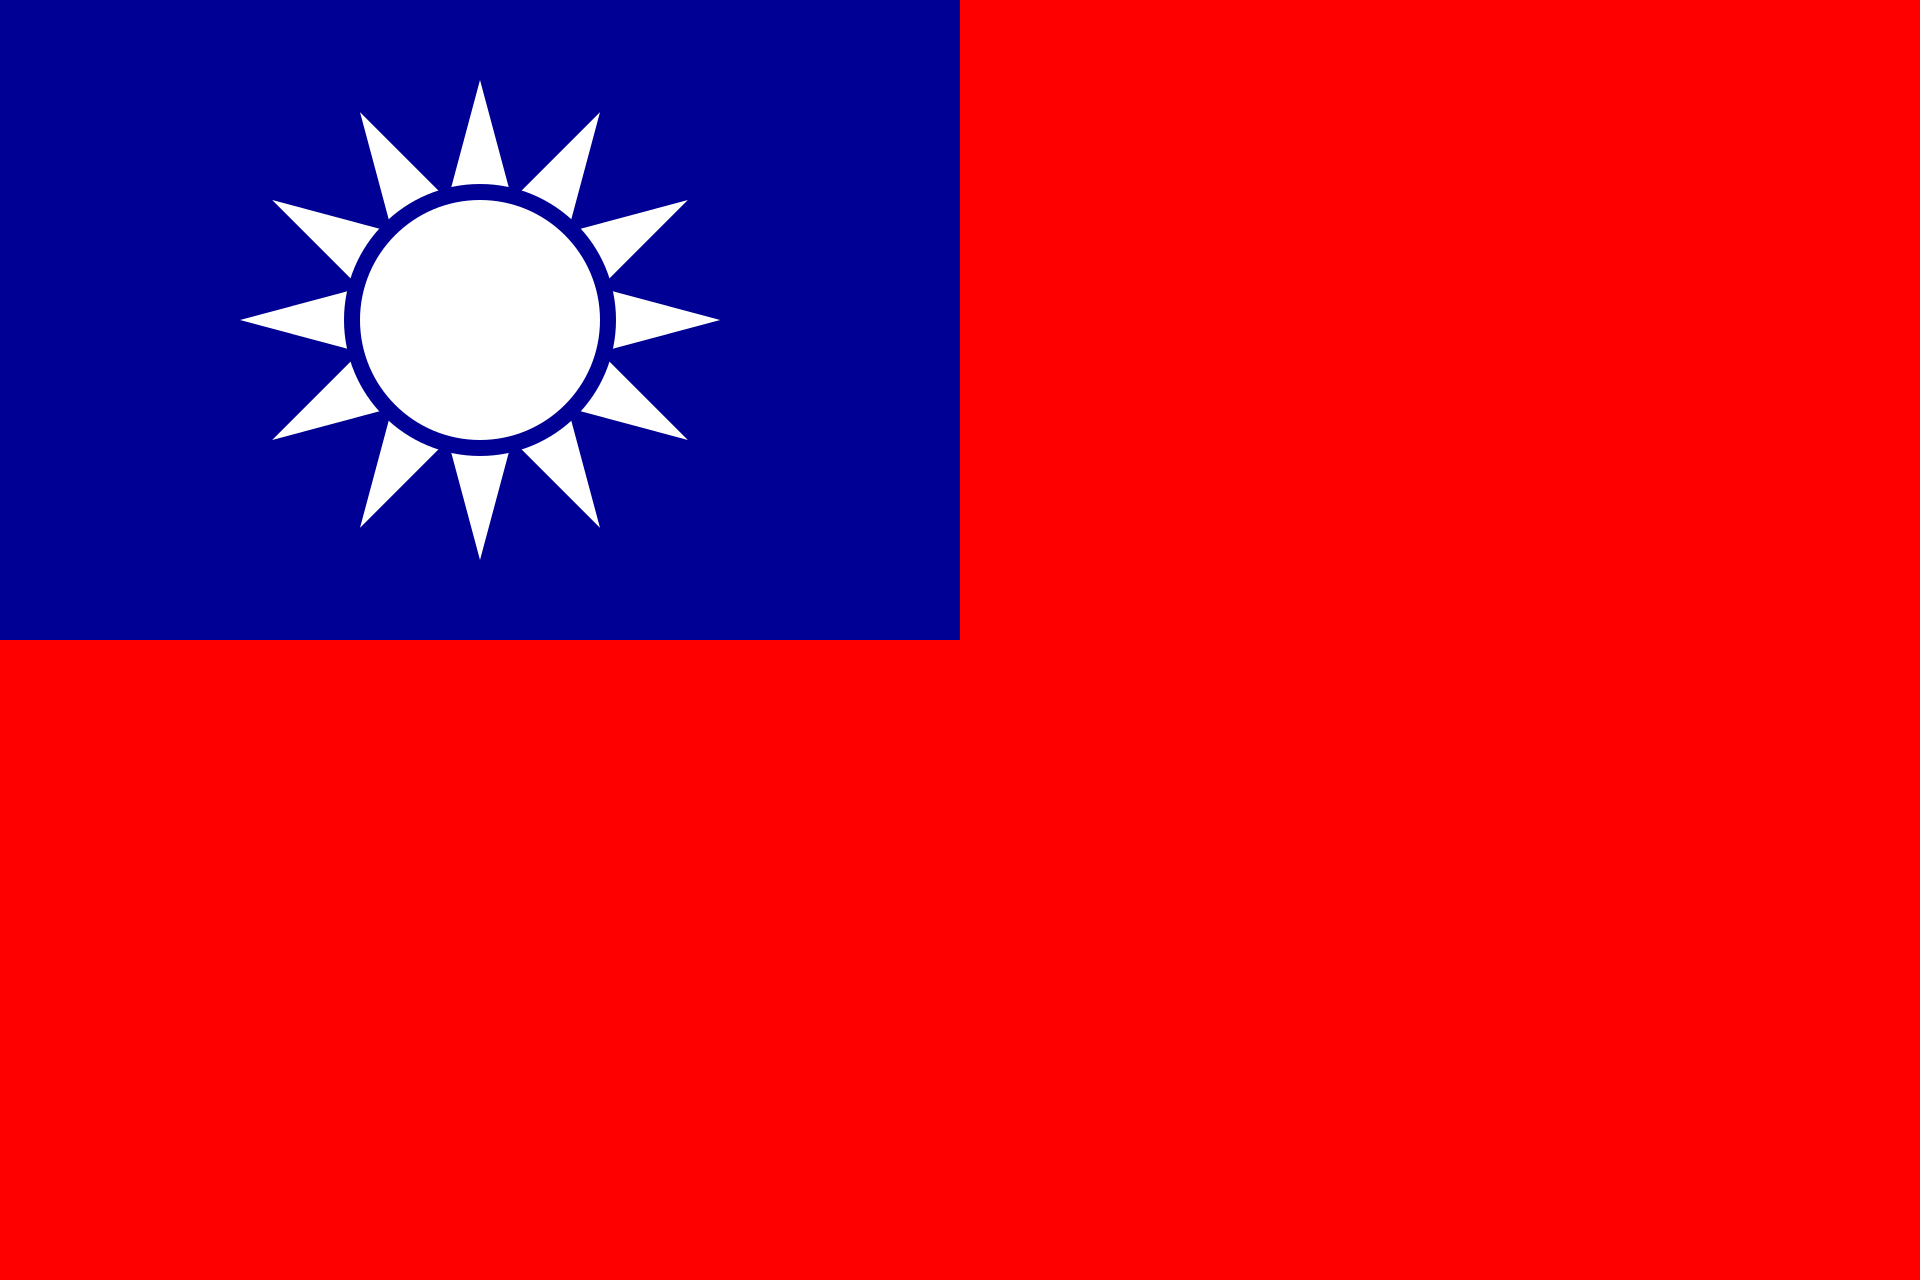 TESOL Taiwan